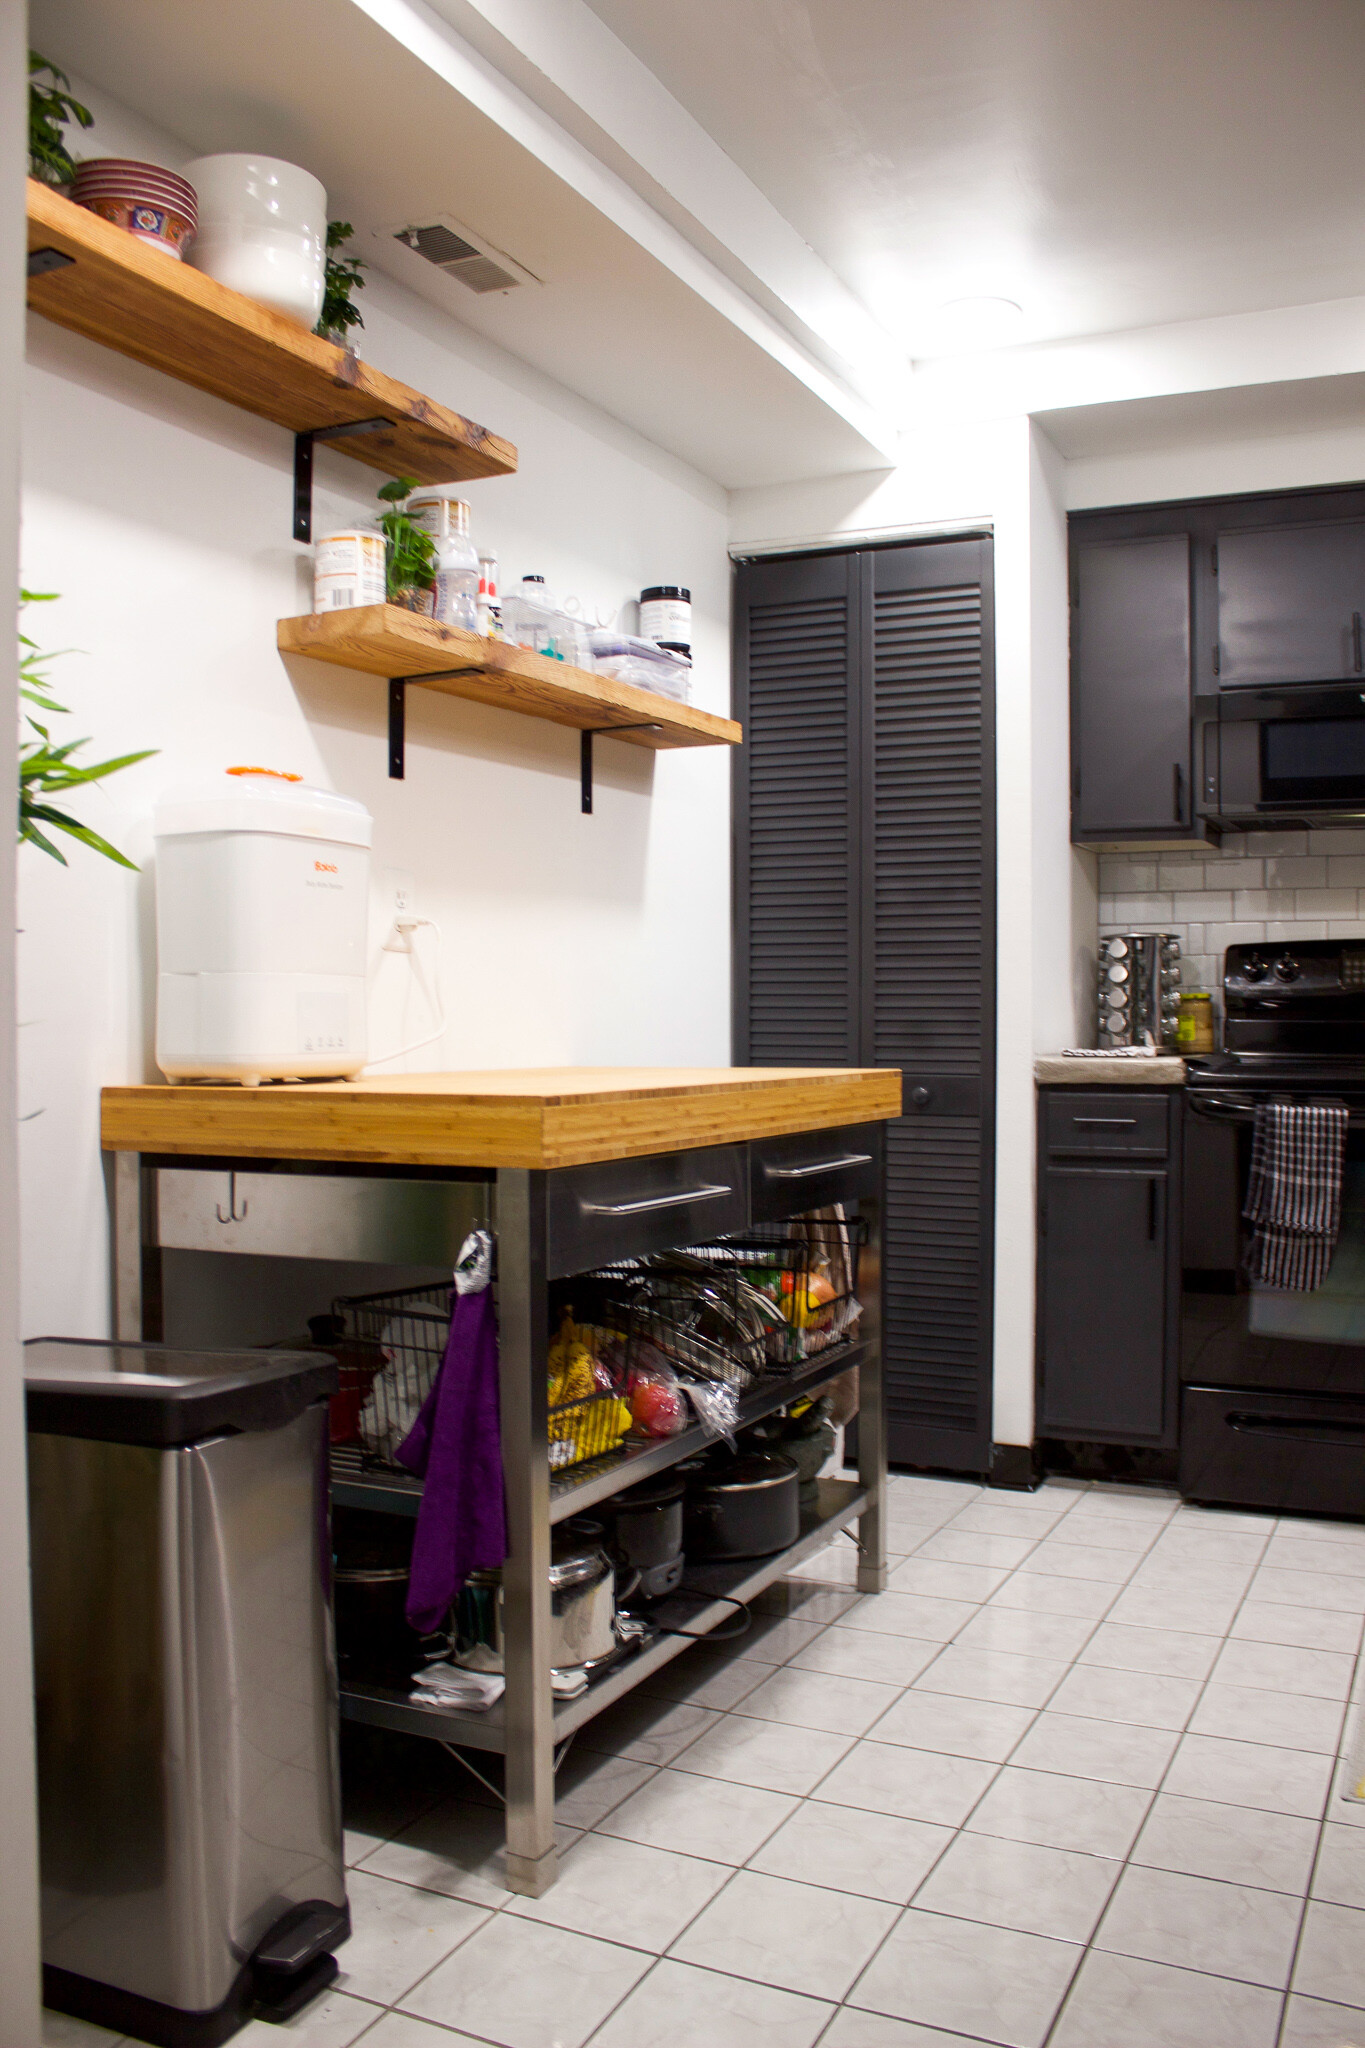 diy-kitchen-renovation-before-after-setarra